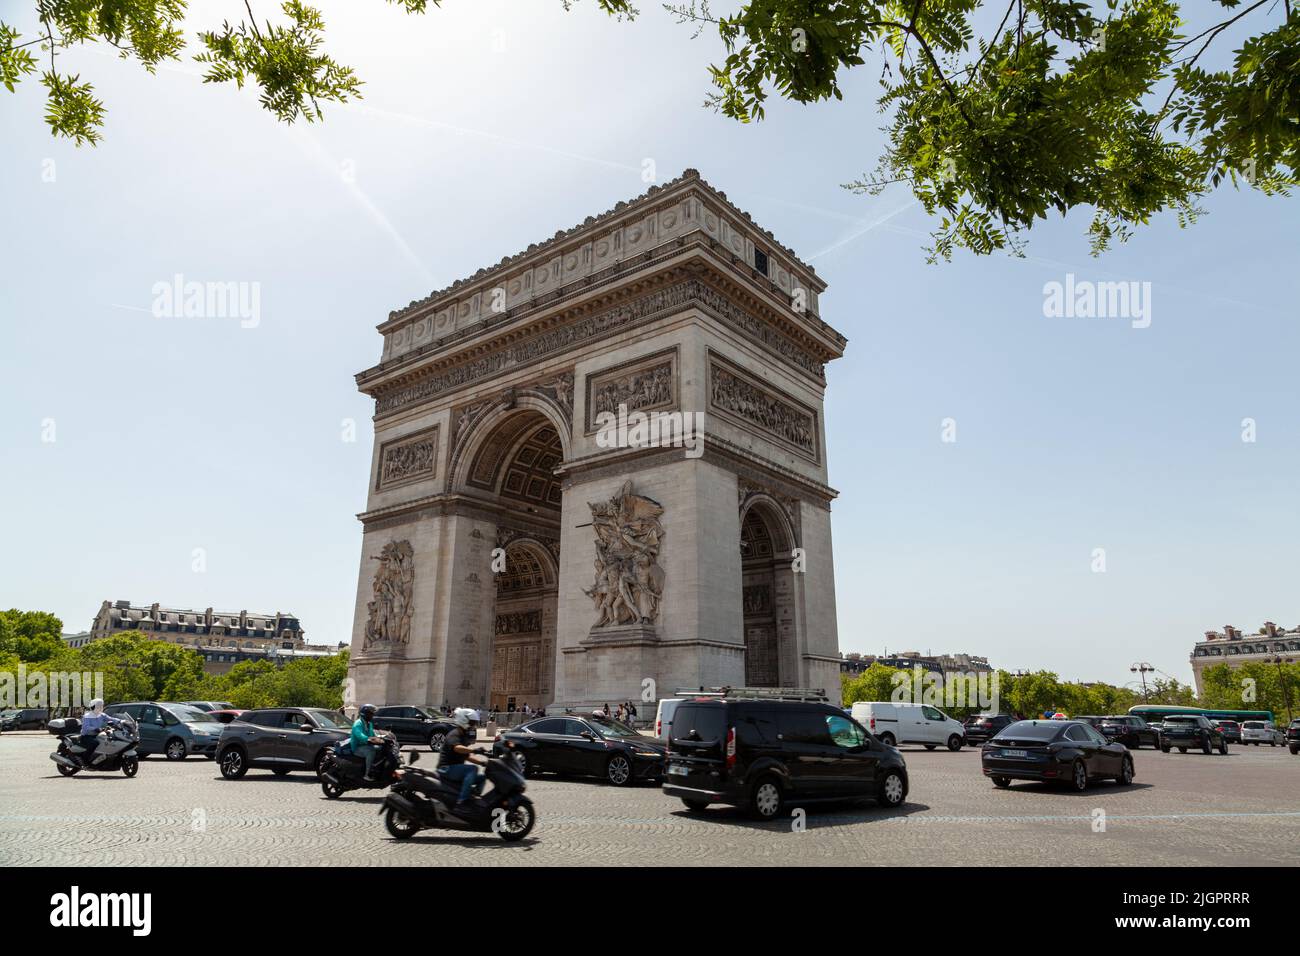 The Arc de Triompe, Champs-Élysées, Place Charles de Gaulle, Paris, France. Stock Photo